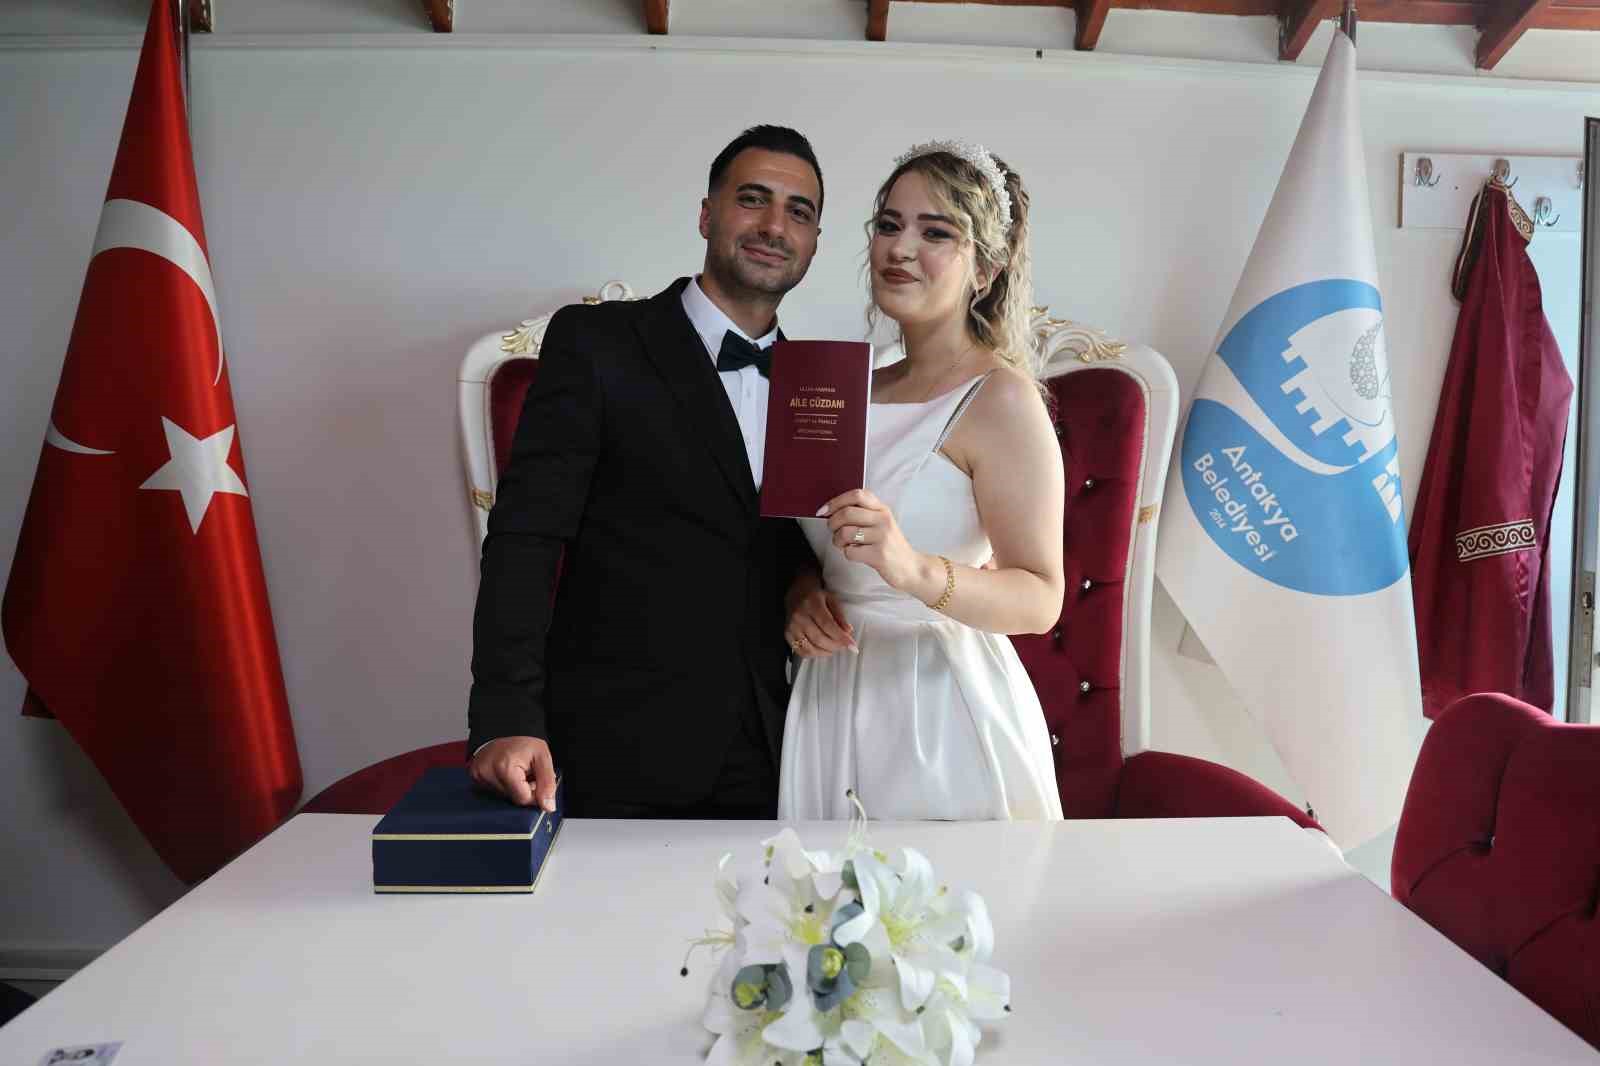 evlilik kredisine başvurusu onaylanan ve eğitimi başarıyla tamamlayan 141 çiftin evlilik telaşı başladı